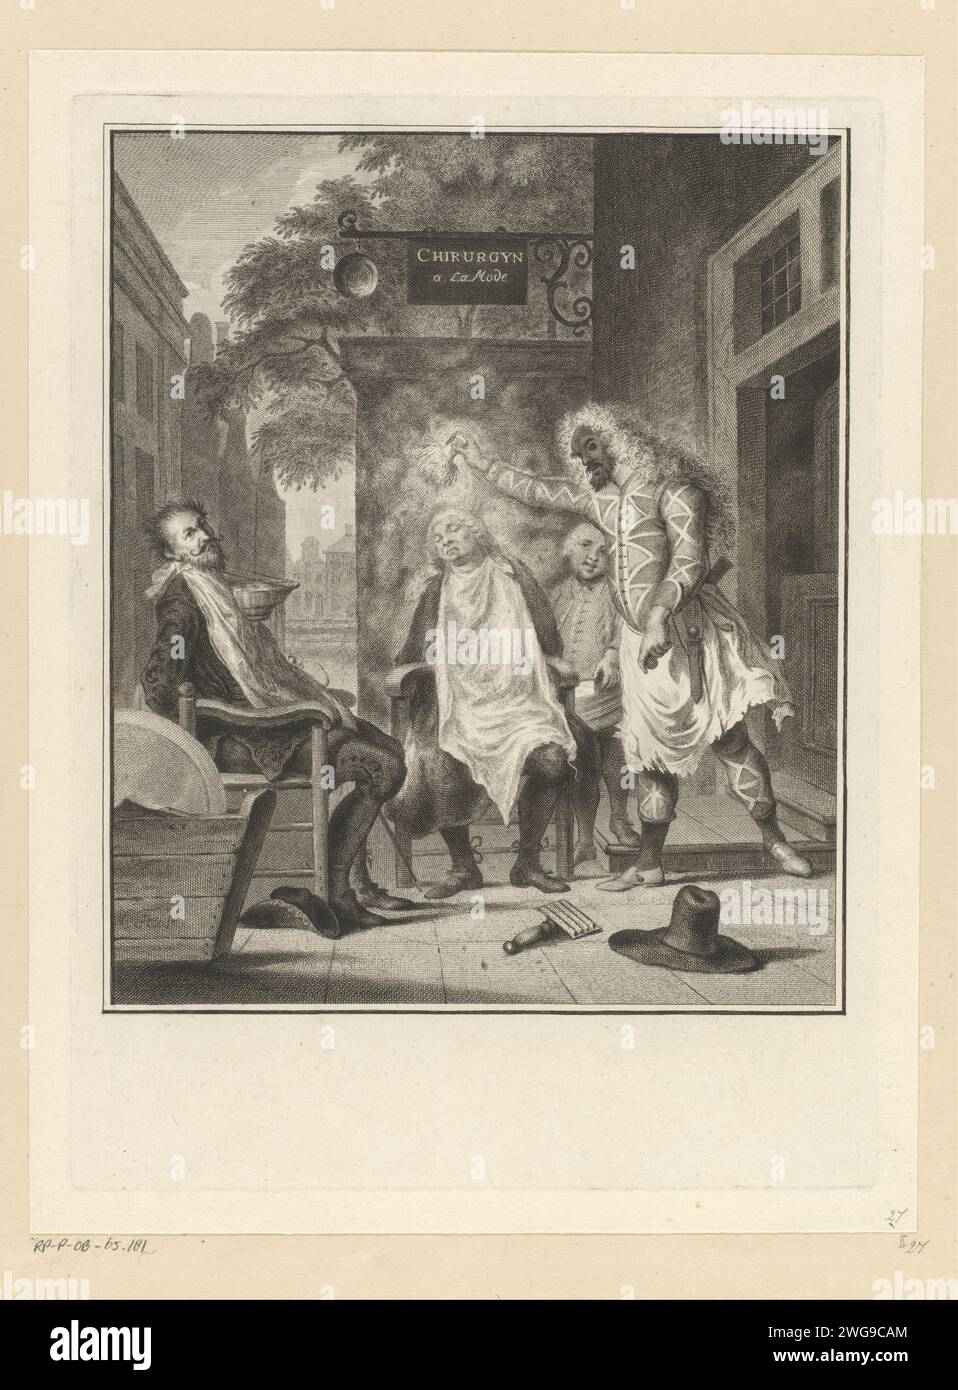 Arlequin, Wizard e Barbier: I rivali de Verdogen, Pieter Tanjé, dopo Cornelis Troost, stampa del 1758 Belloardo e Capitano vengono rasati con una mano dura e ottenuti con farina bagnata dal barbiere. Il suo servo Pierot tiene il contenitore con la farina. Arlequin ha nascosto una mazza sotto il braccio sinistro con la quale finalmente modificherà i suoi rivali Belloardo e Capitano. Scena della farsa Arlequin, mago e barbiere, di Willem van der Hoeven. Incisione/incisione su carta Amsterdam Barbiere, Barbershop. Tipi in "Commedia dell'Arte": Harlequin. "art commedy" Foto Stock